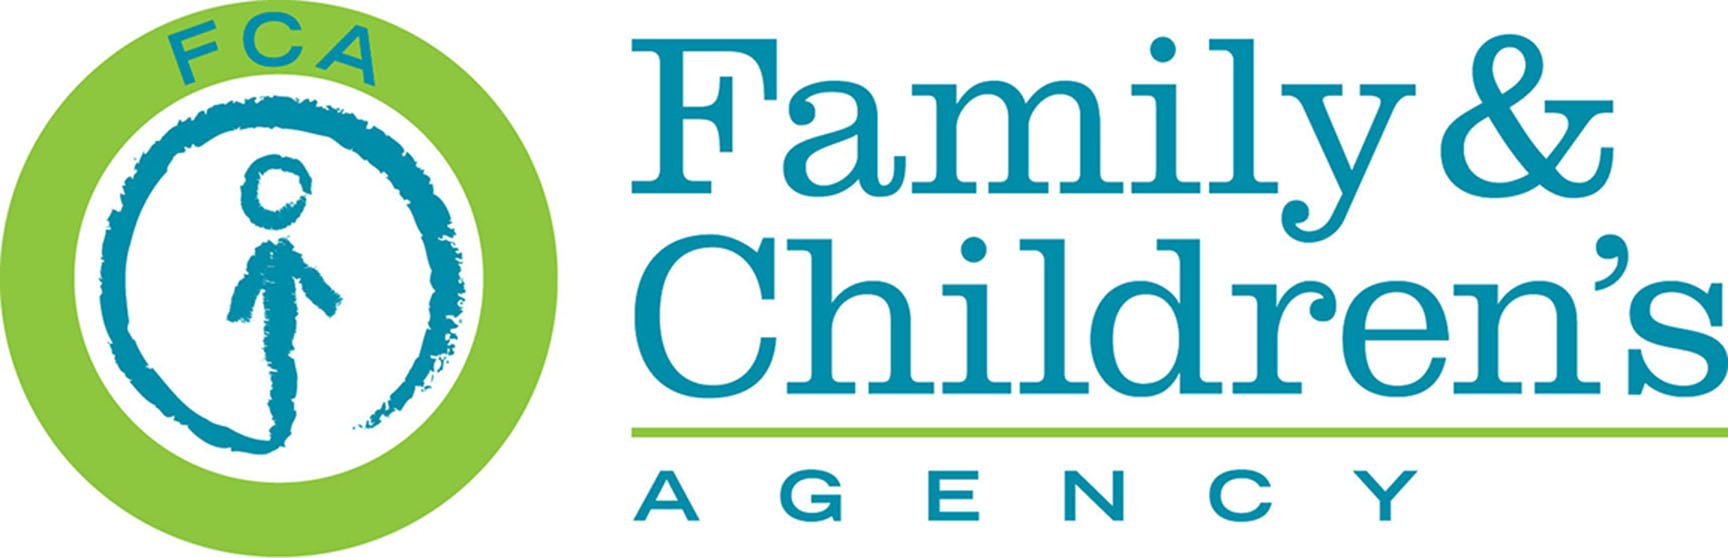 Family & Children's Agency